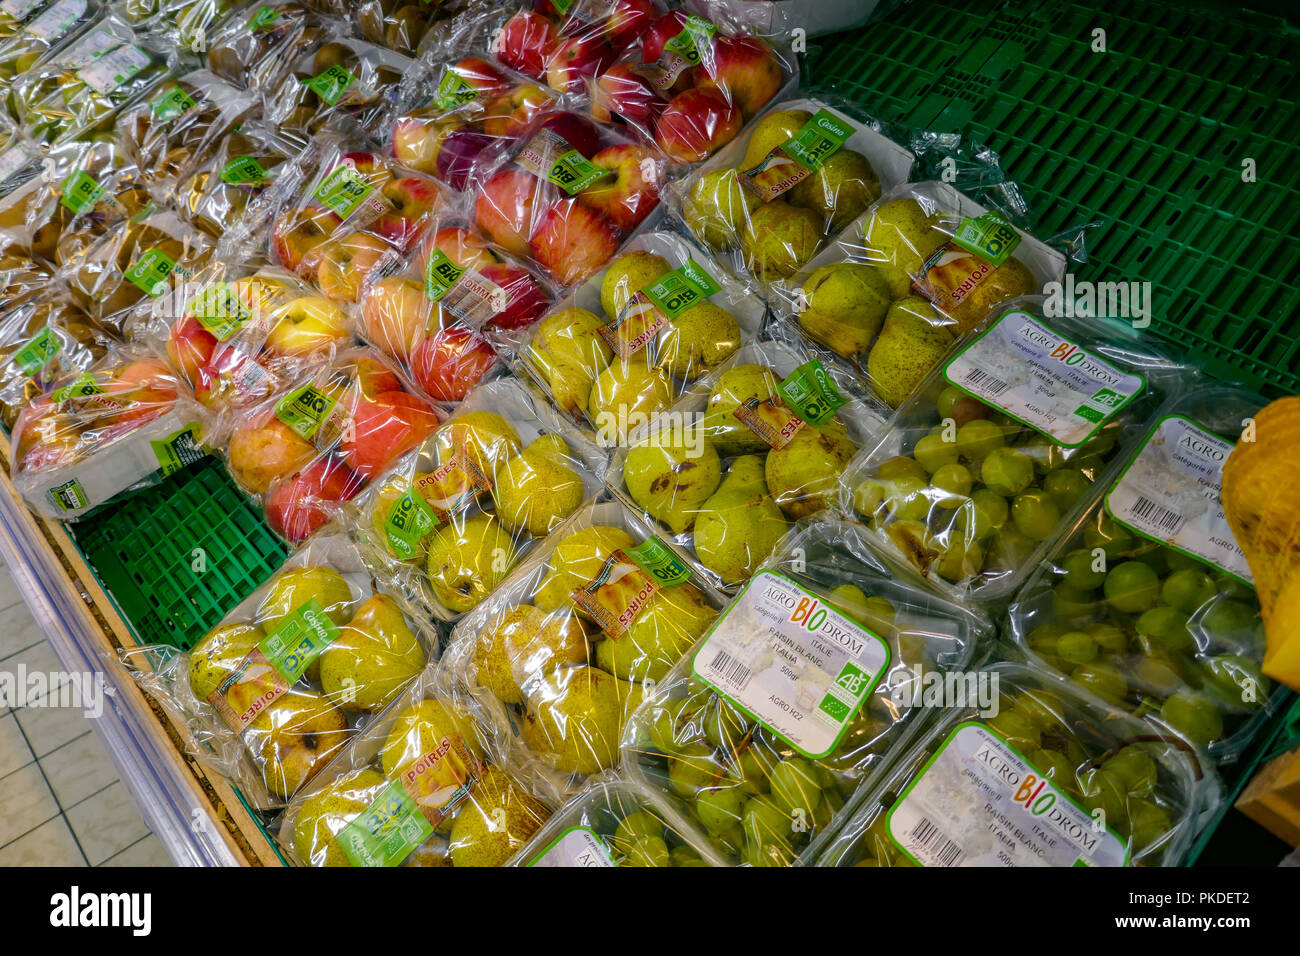 Les pommes, poires, raisins, fruits emballés dans du plastique dans un supermarché français Banque D'Images